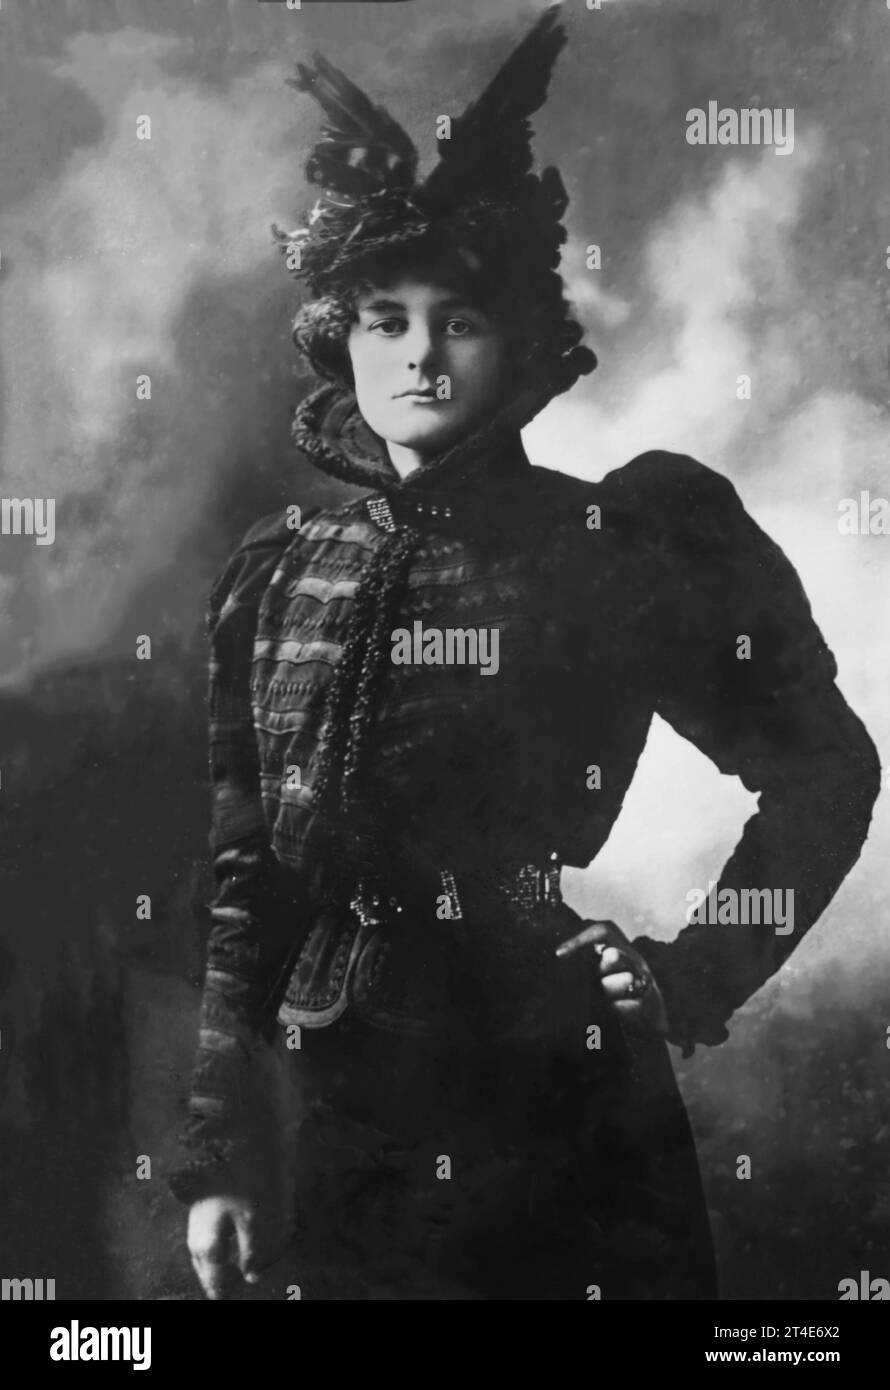 Maud gonne. Ritratto della rivoluzionaria repubblicana irlandese, suffragetta e attrice, Maud gonne MacBride (1866-1953) da Bain News Service Foto Stock